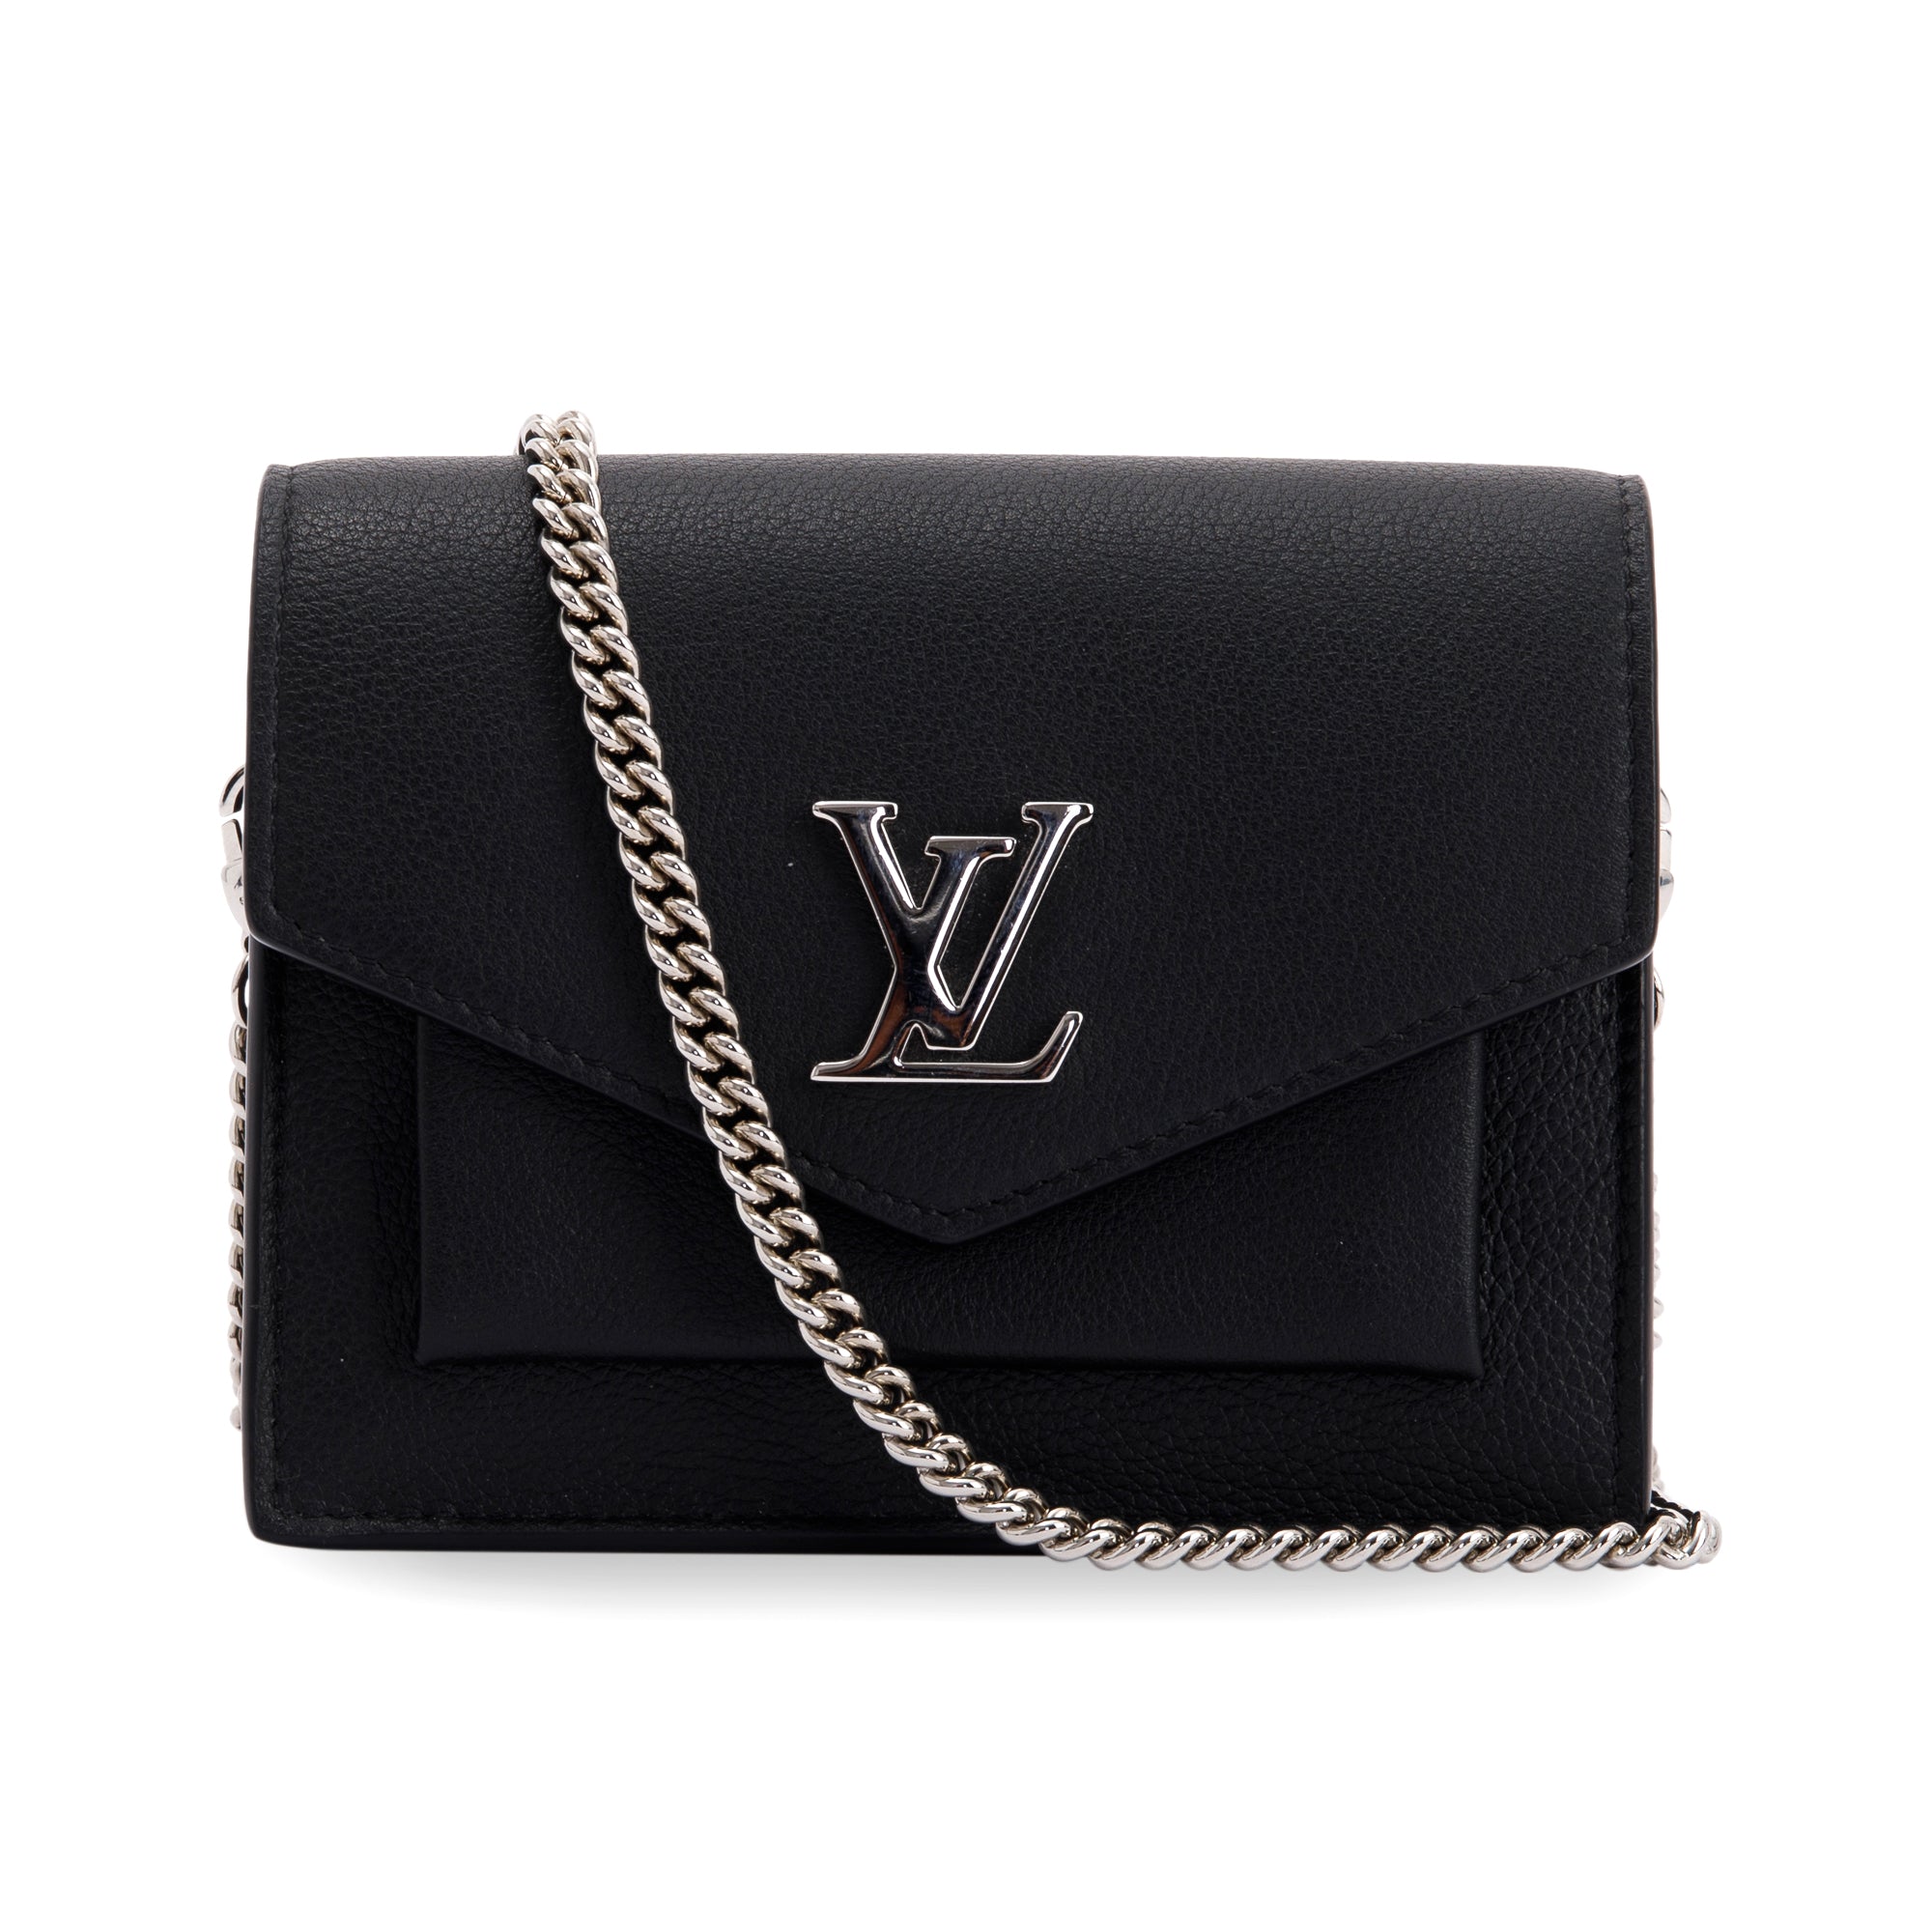 What Fit's Louis Vuitton mylockmechain pochette